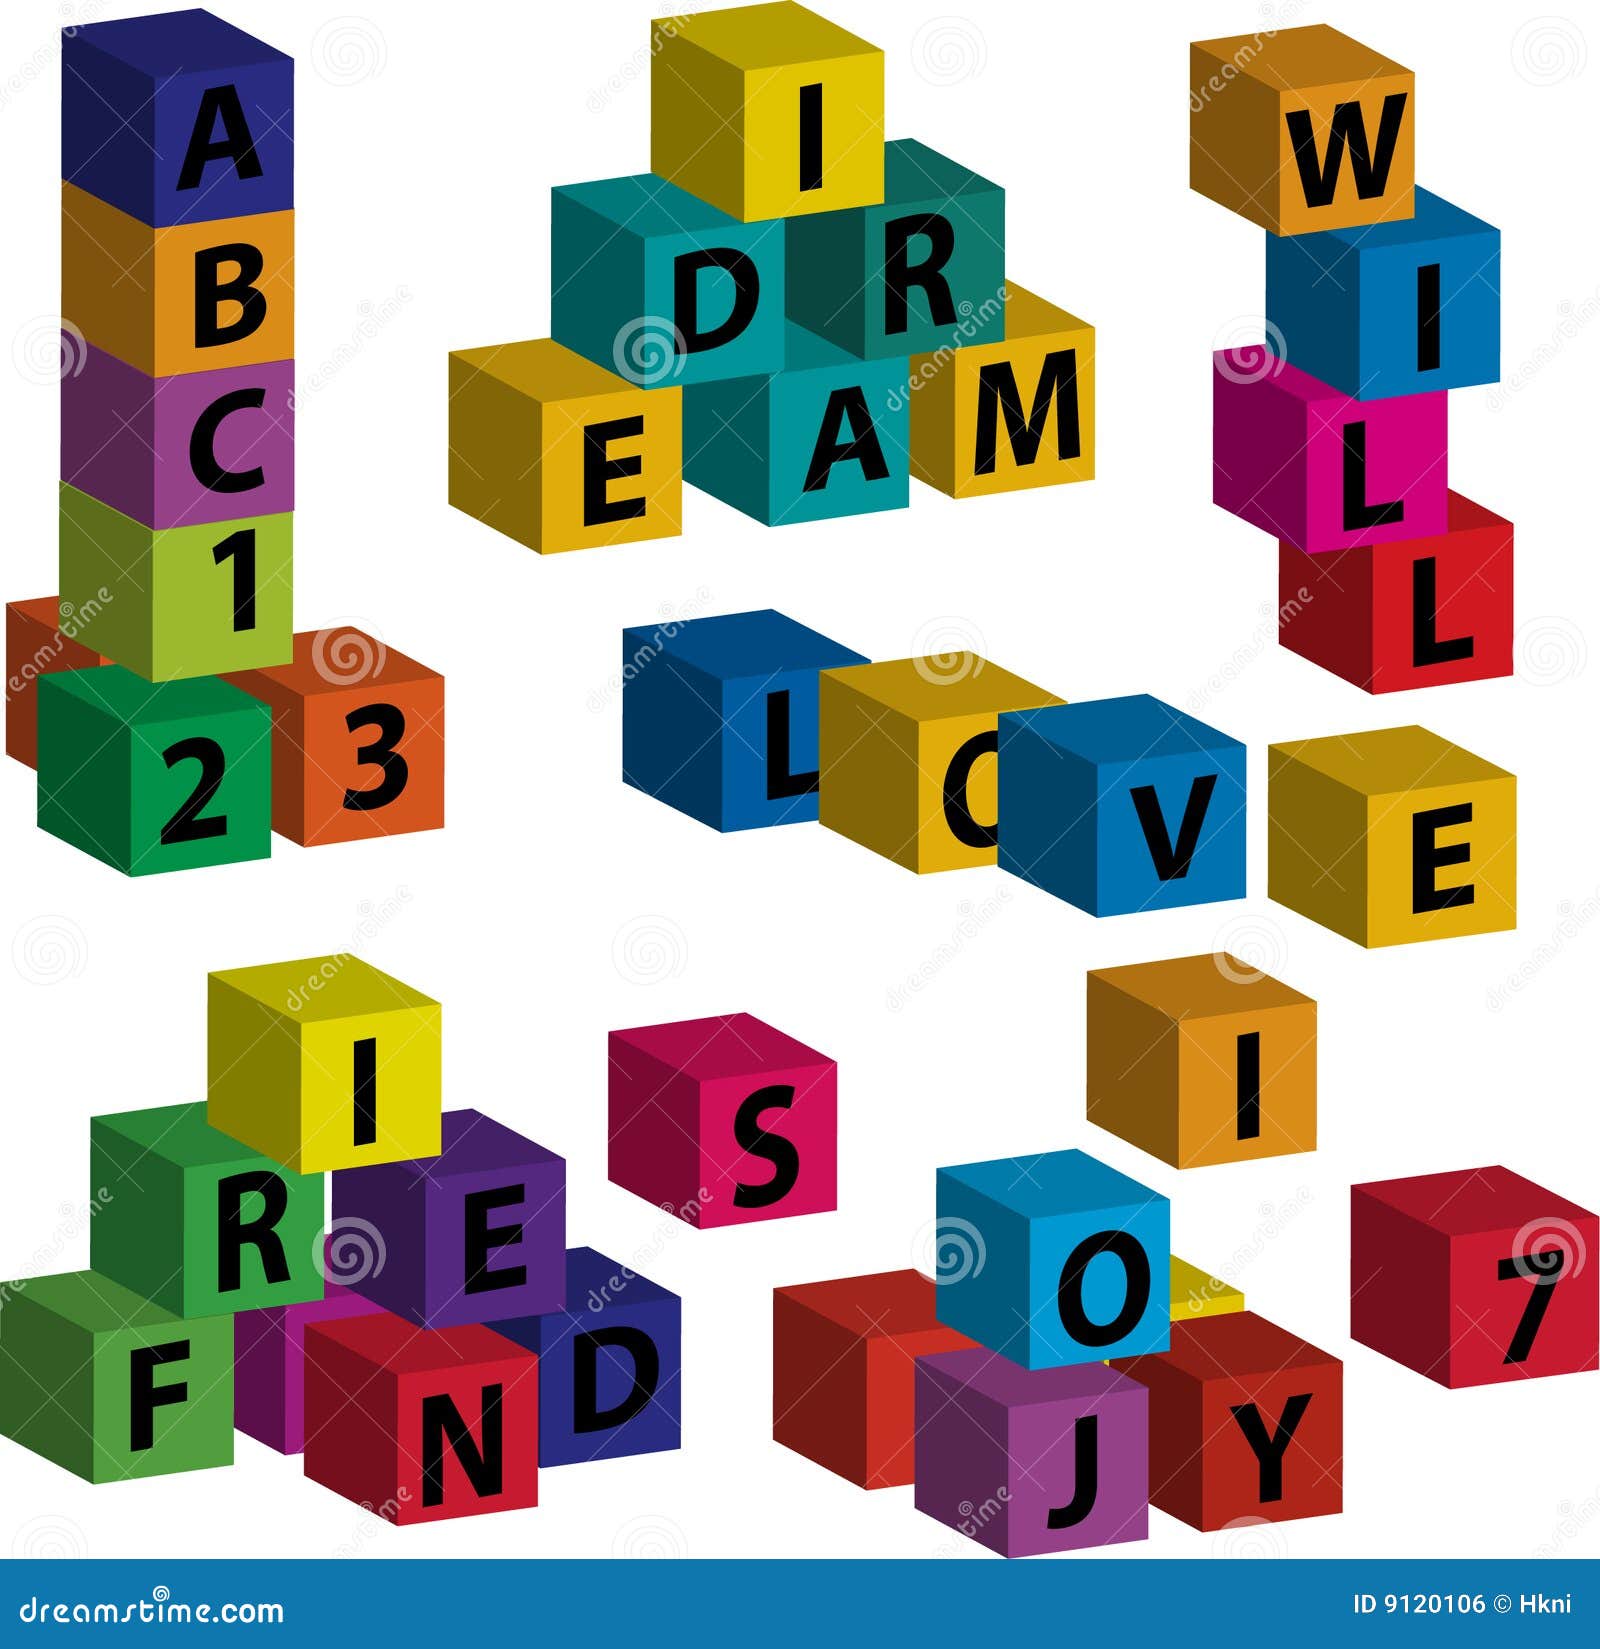 Giocando con i mattoni - 2. I blocchetti del giocattolo con le lettere che formano le parole amano, sogno, l'amico, la gioia